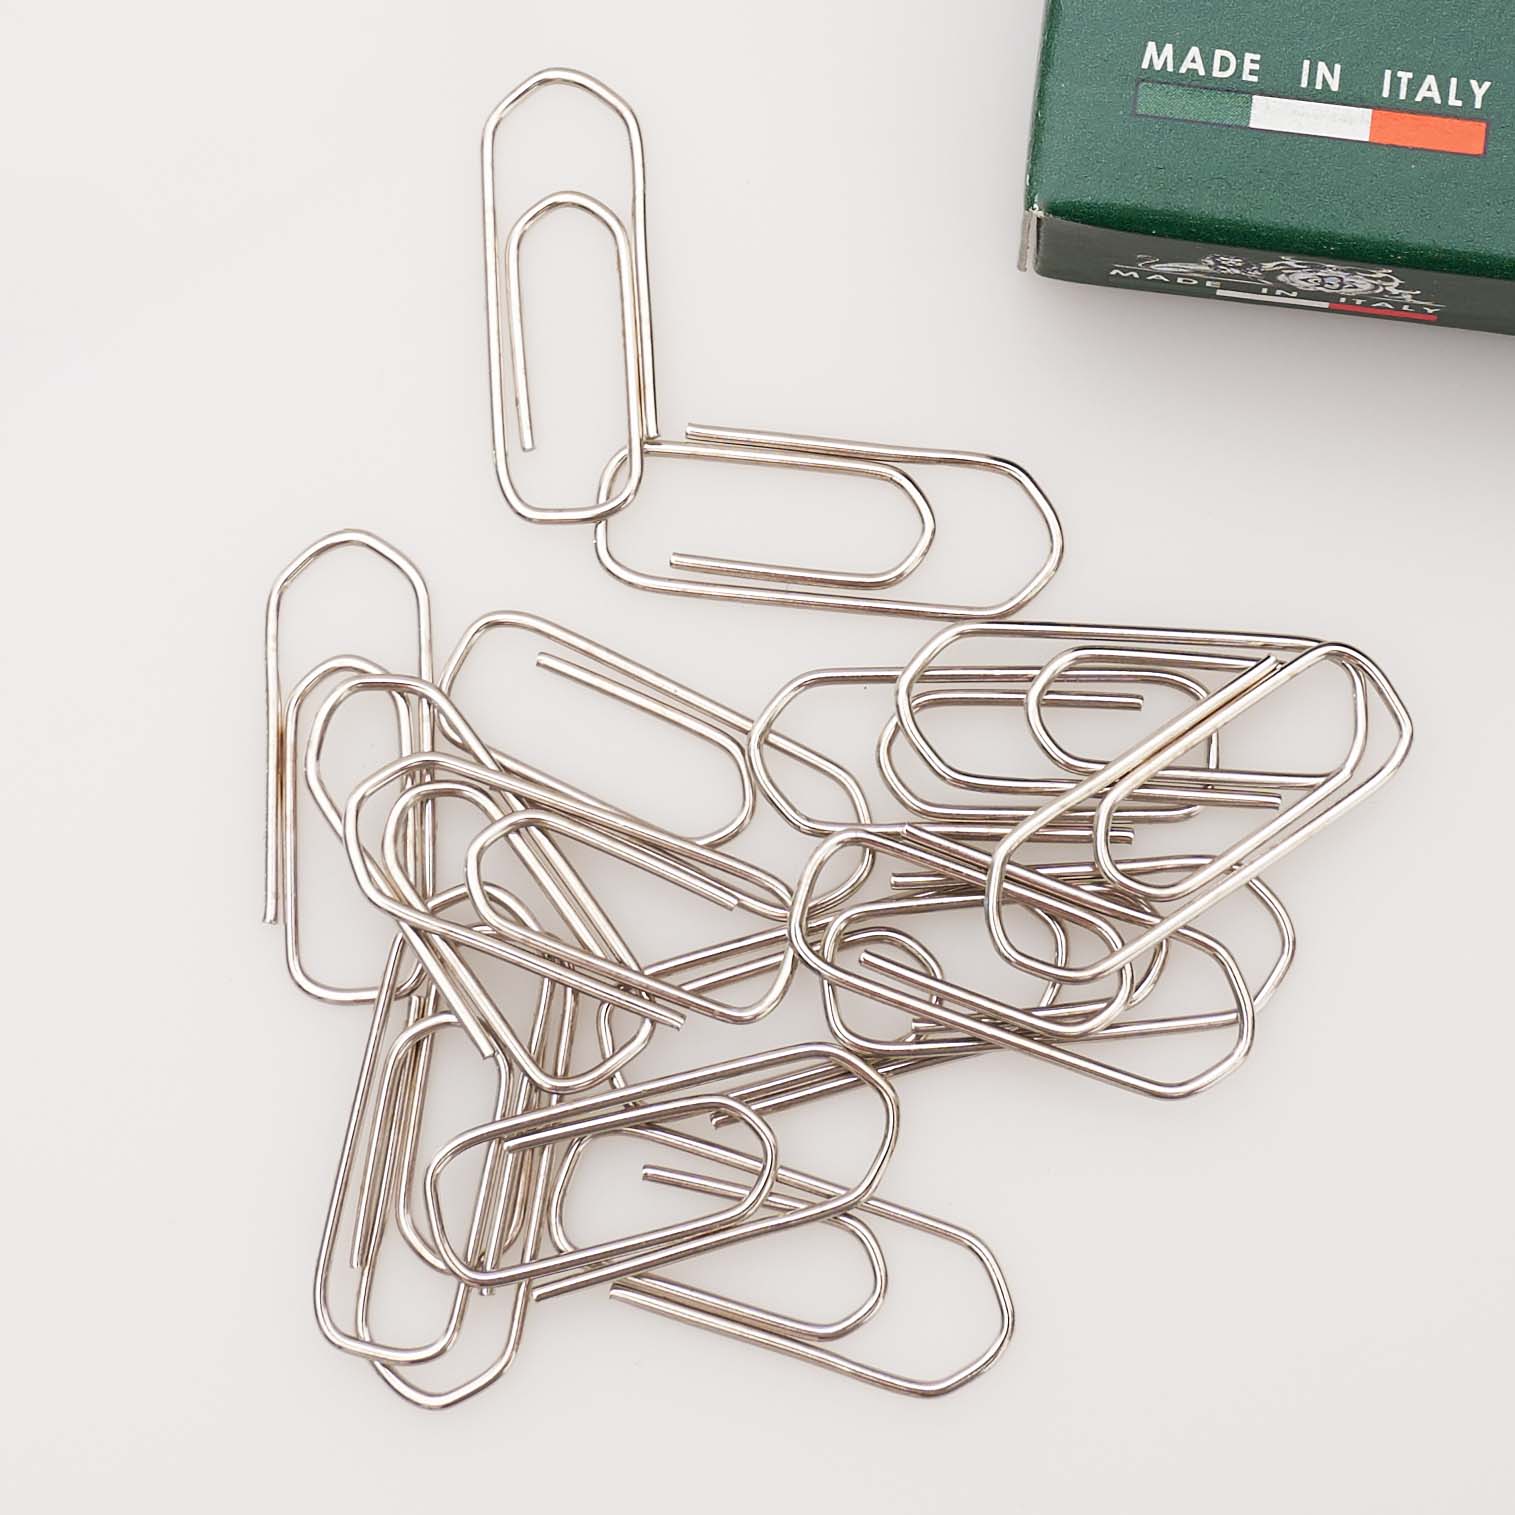 Leone Dellera paper clips, paper clips made in italy green box size 3